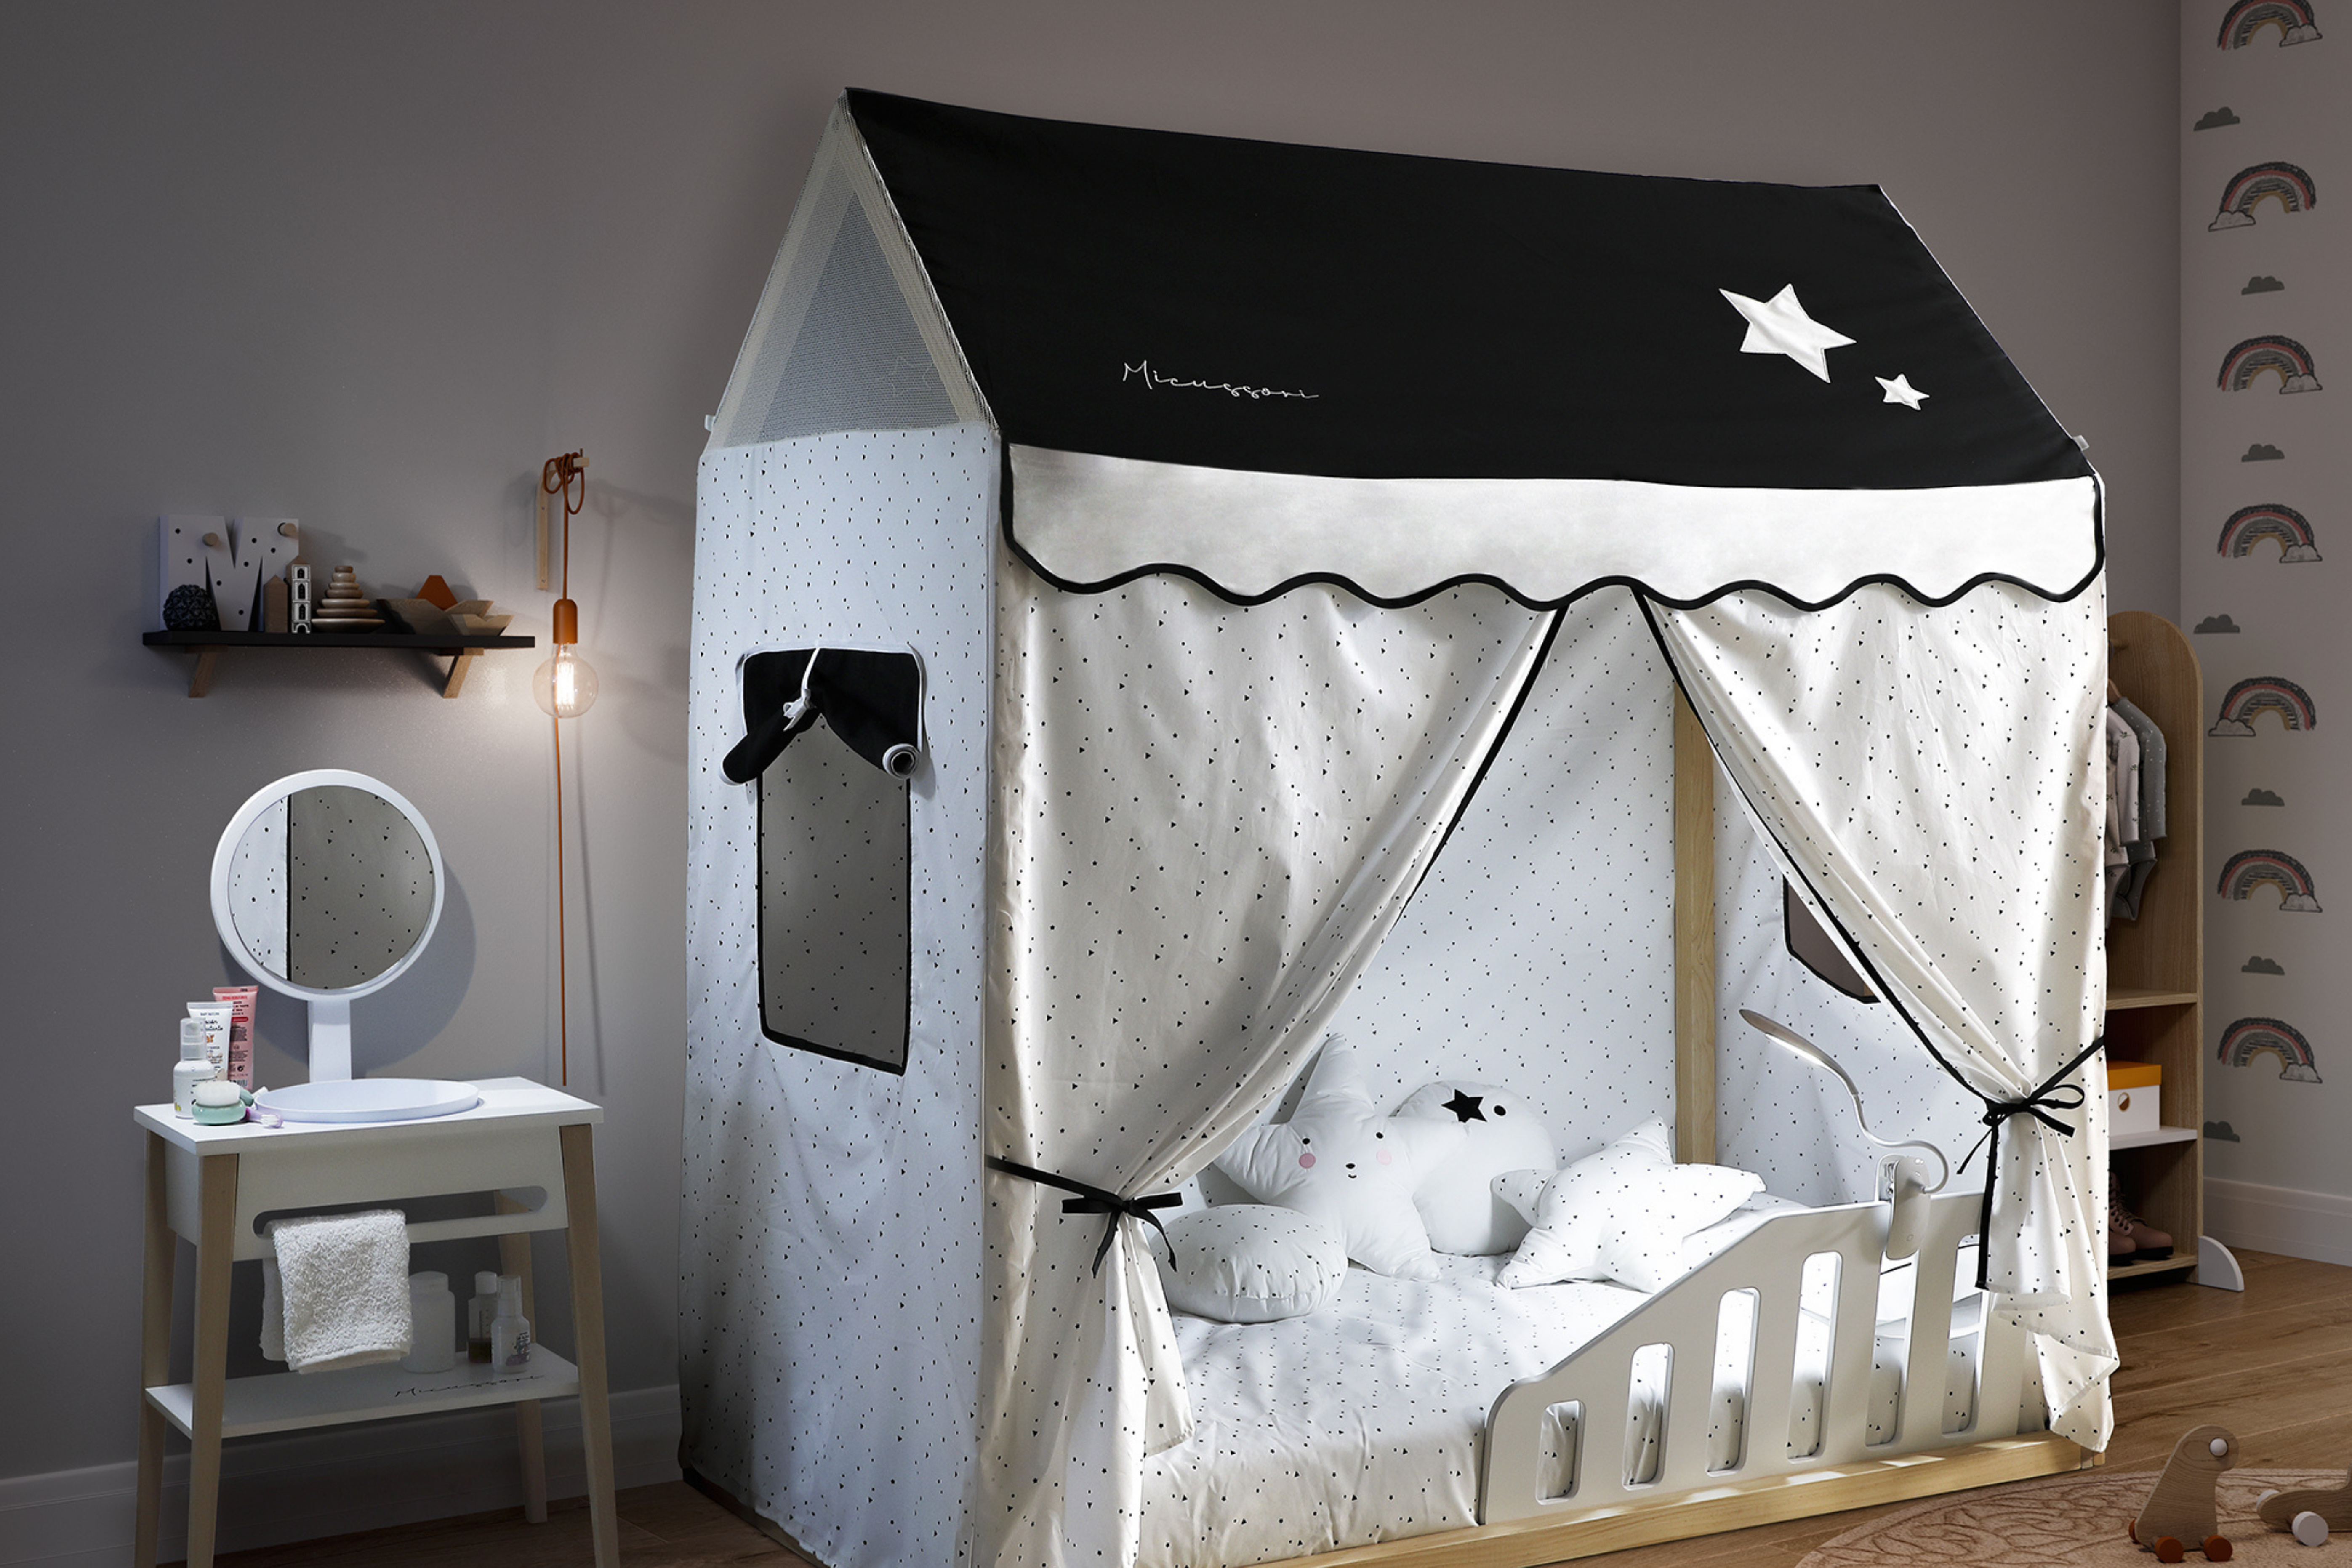 La nueva cama Montessori se llama Tipi House 6126 cunas y accesorios para bebé